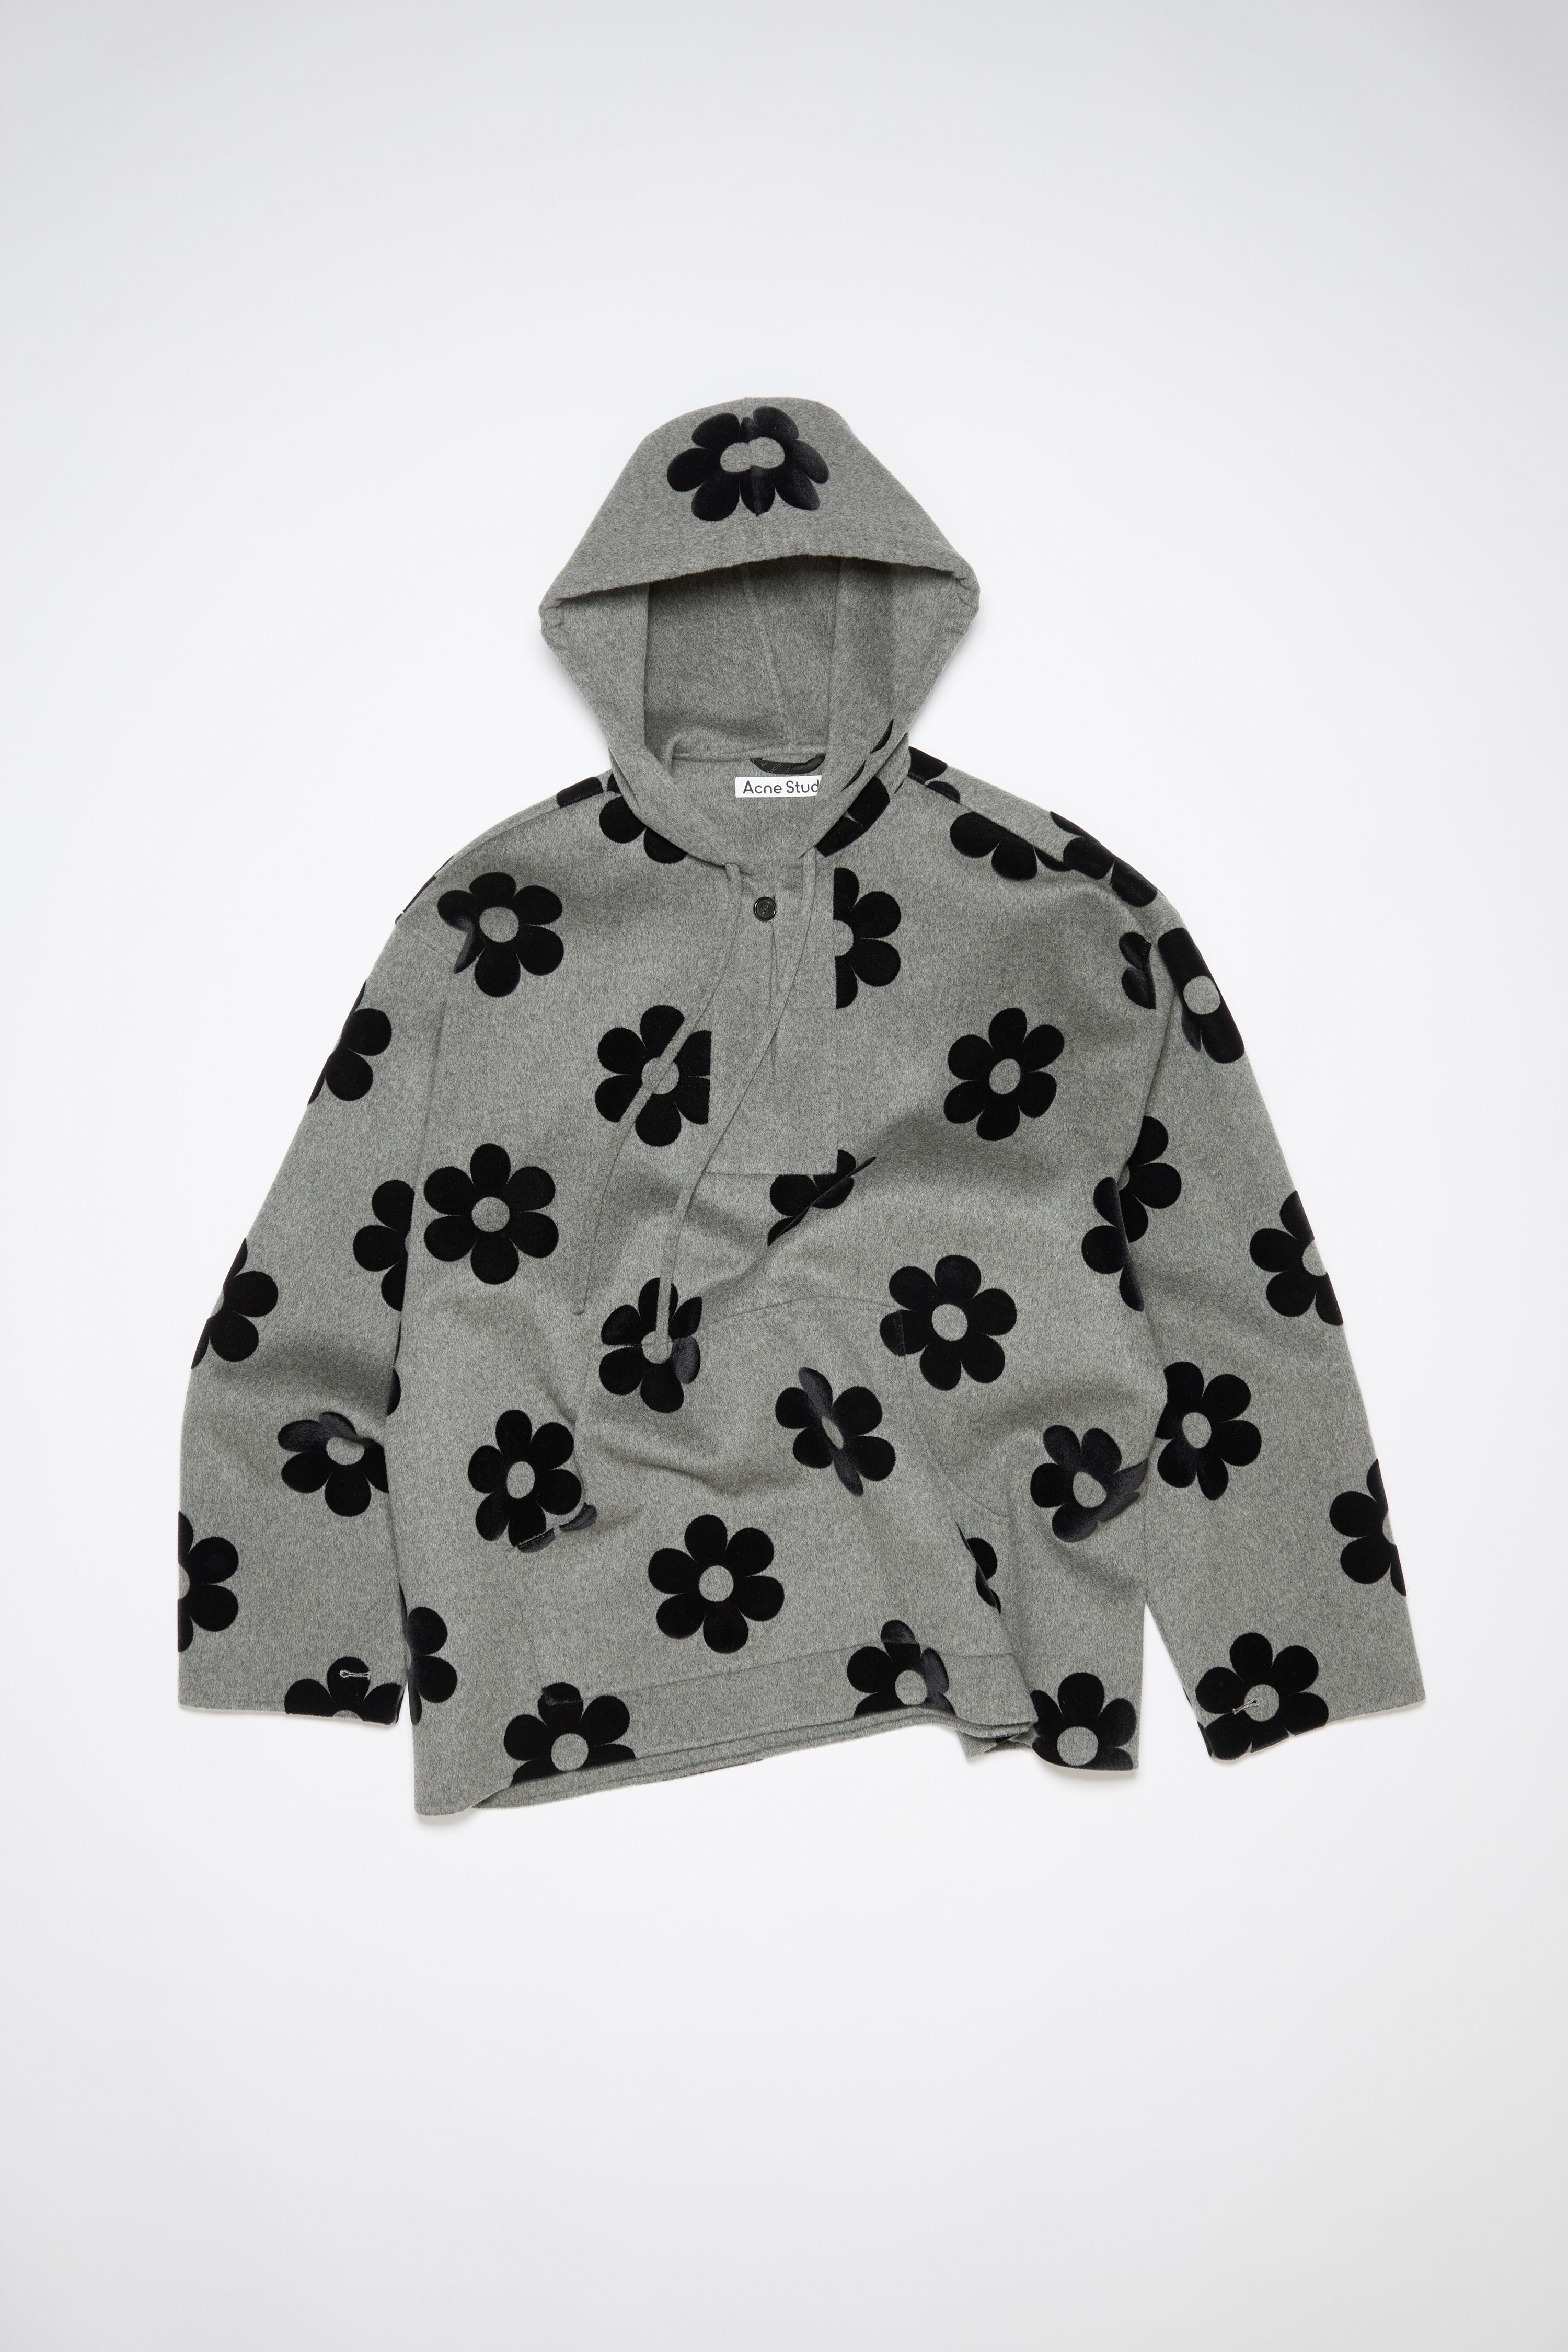 Acne Studios - Flower wool hooded jacket - Vintage grey melange